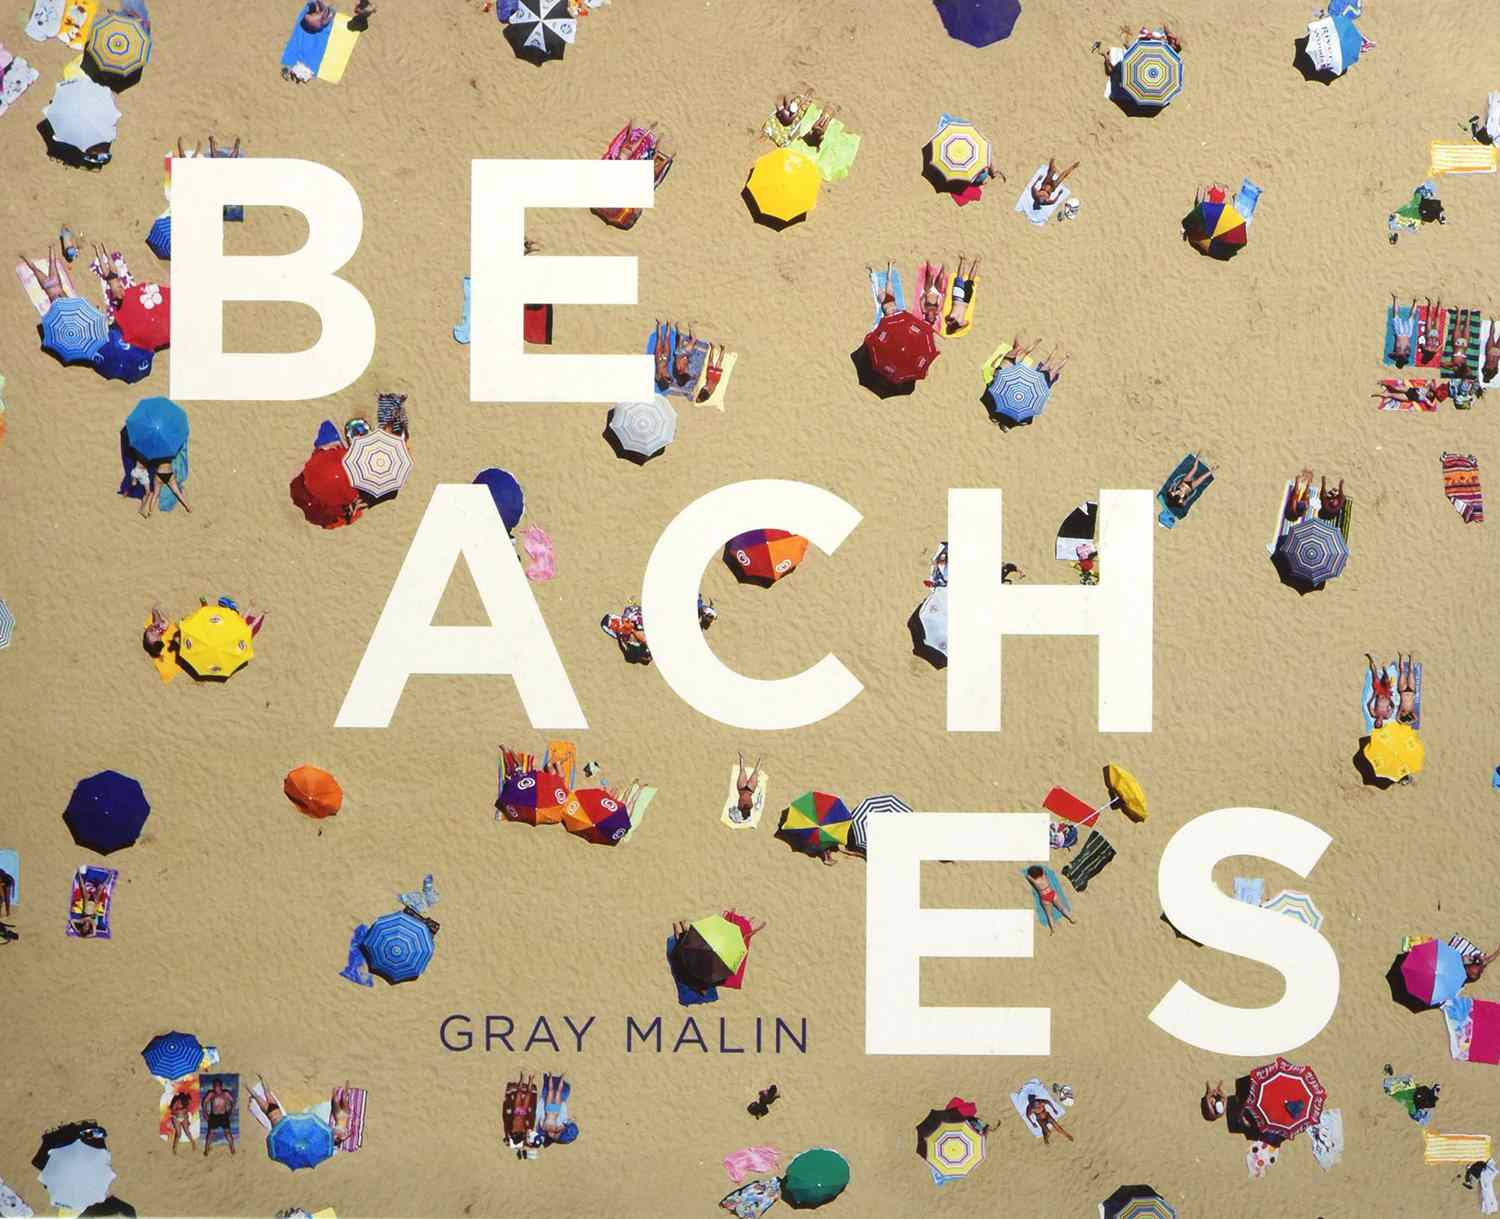 Beaches by Gray Malin&nbsp;